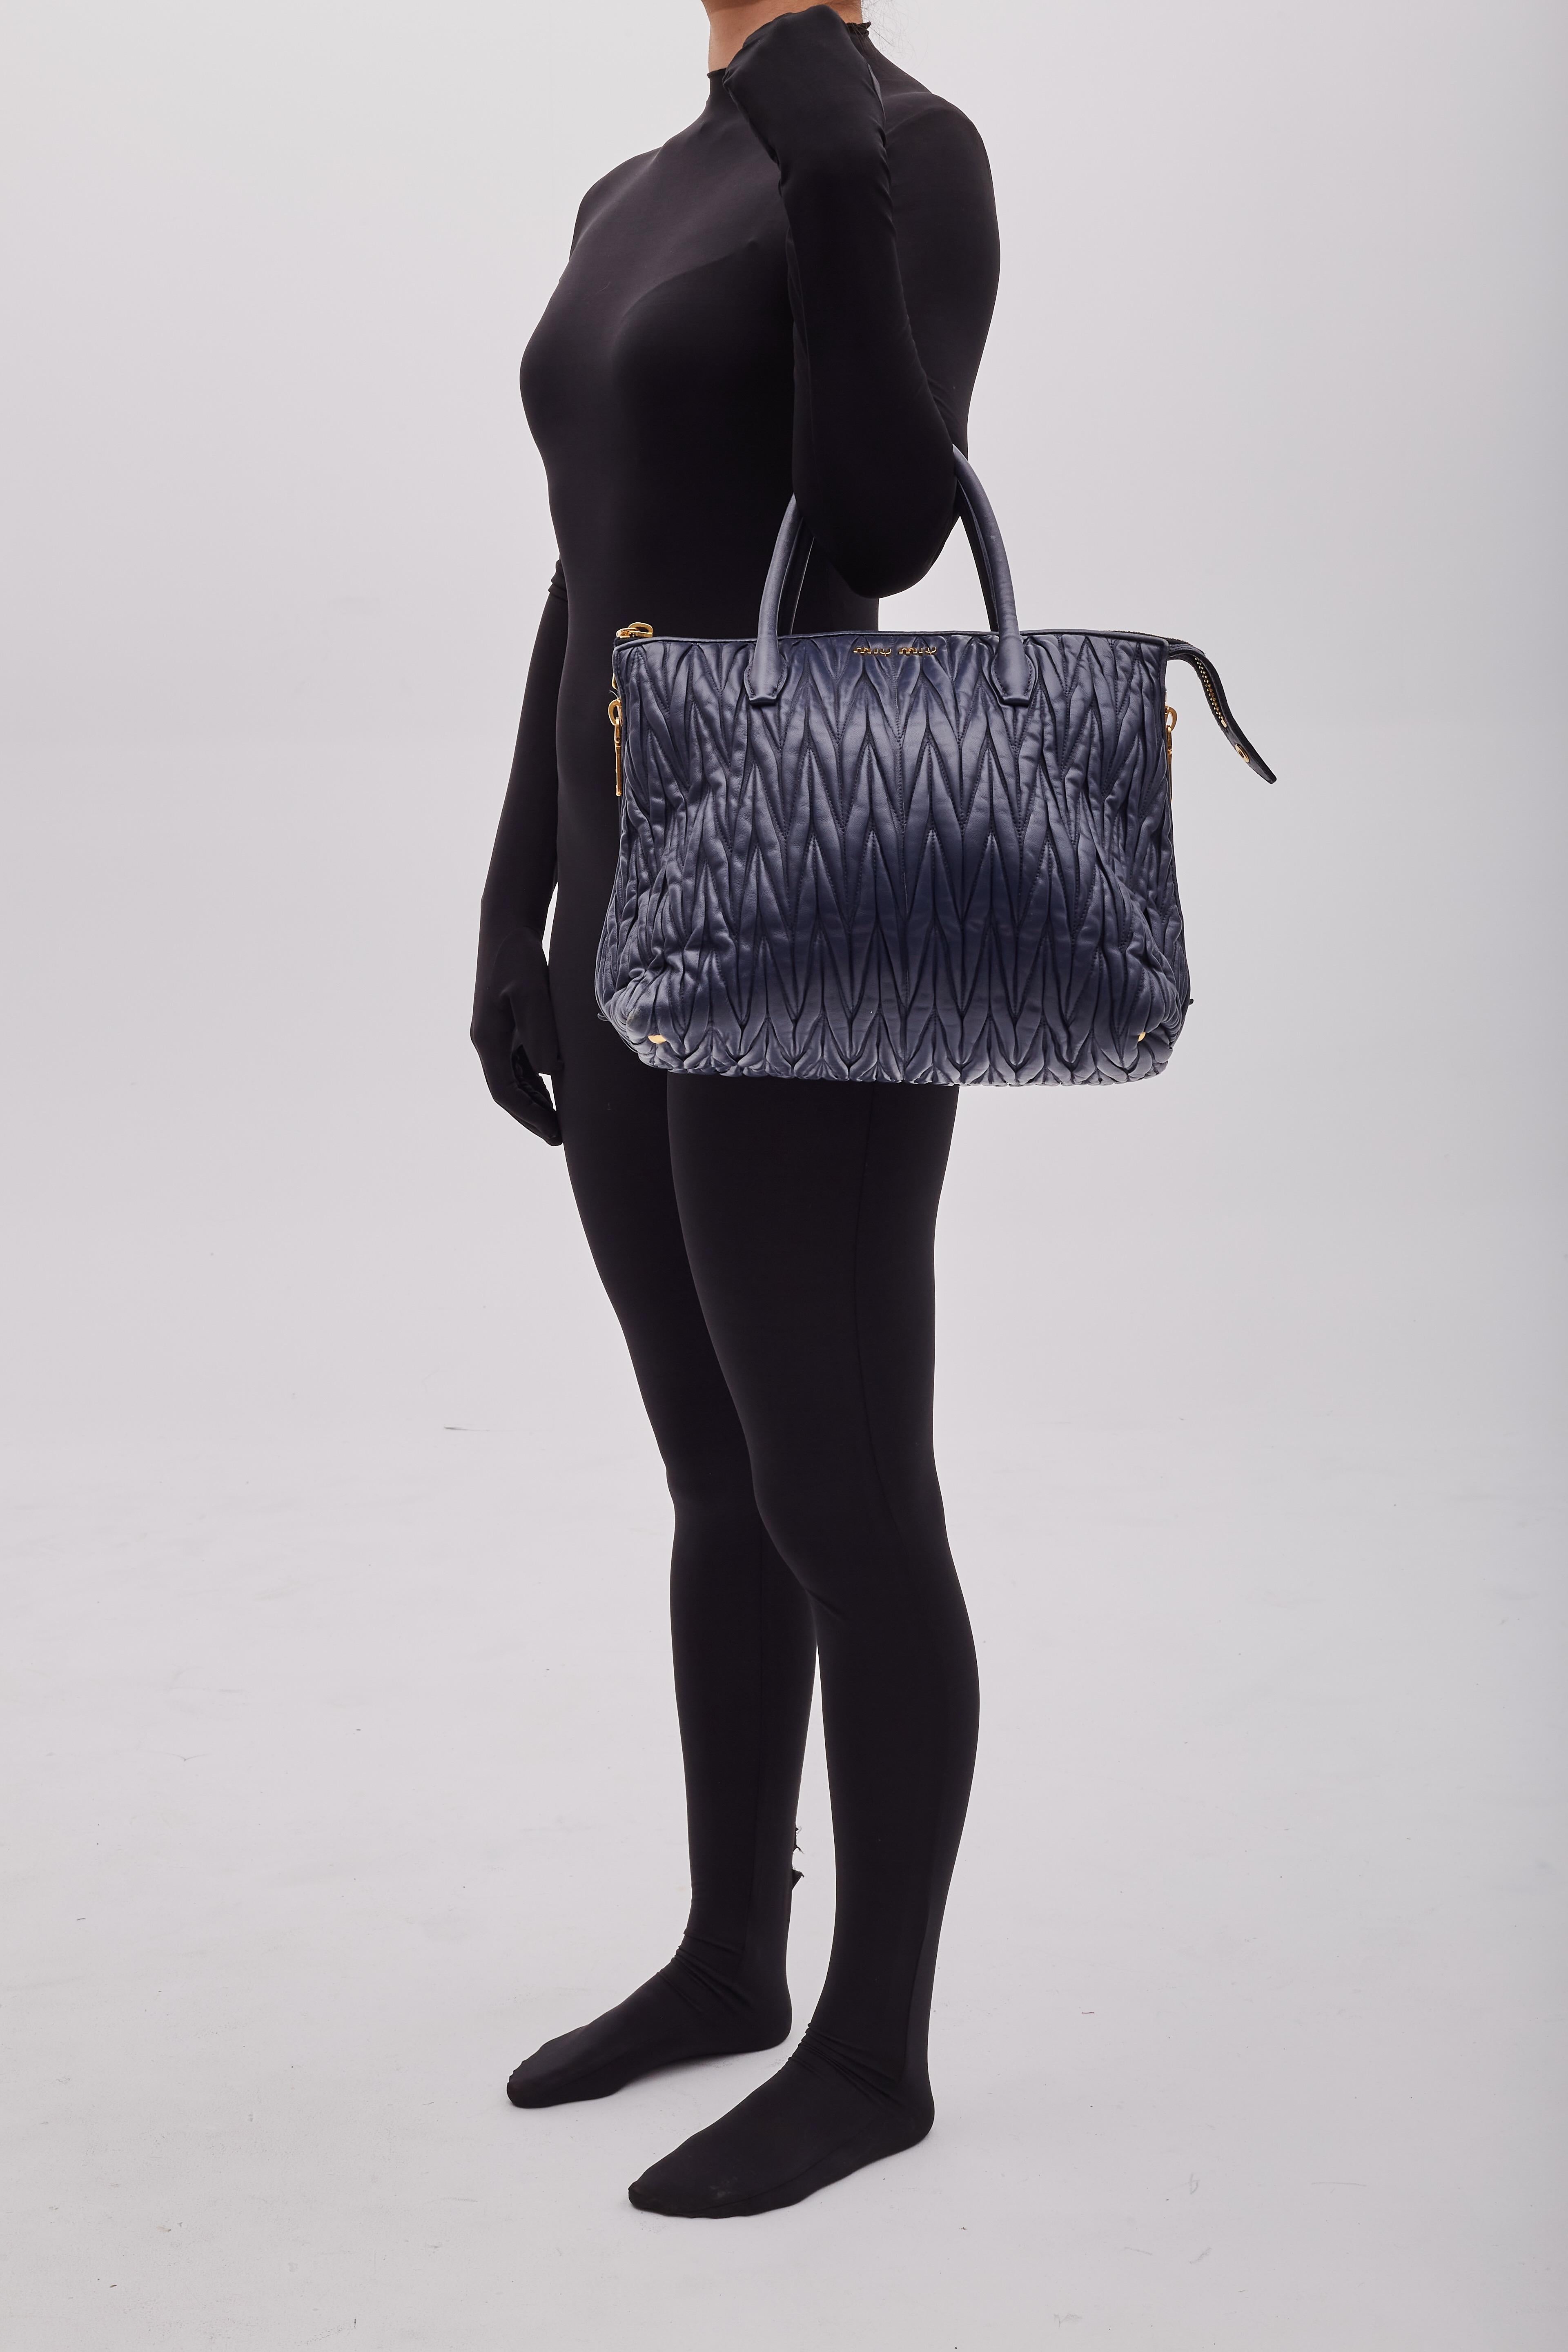 Die MIU MIU Tote Bag, entworfen von Miuccia Prada unter der Marke Miu Miu, wird vorgestellt. Die Tasche hat ein Matelasse-Design, ist aus navyfarbenem Nappaleder gefertigt und mit einer Chevron-Naht akzentuiert. Das unifarbene Muster und die